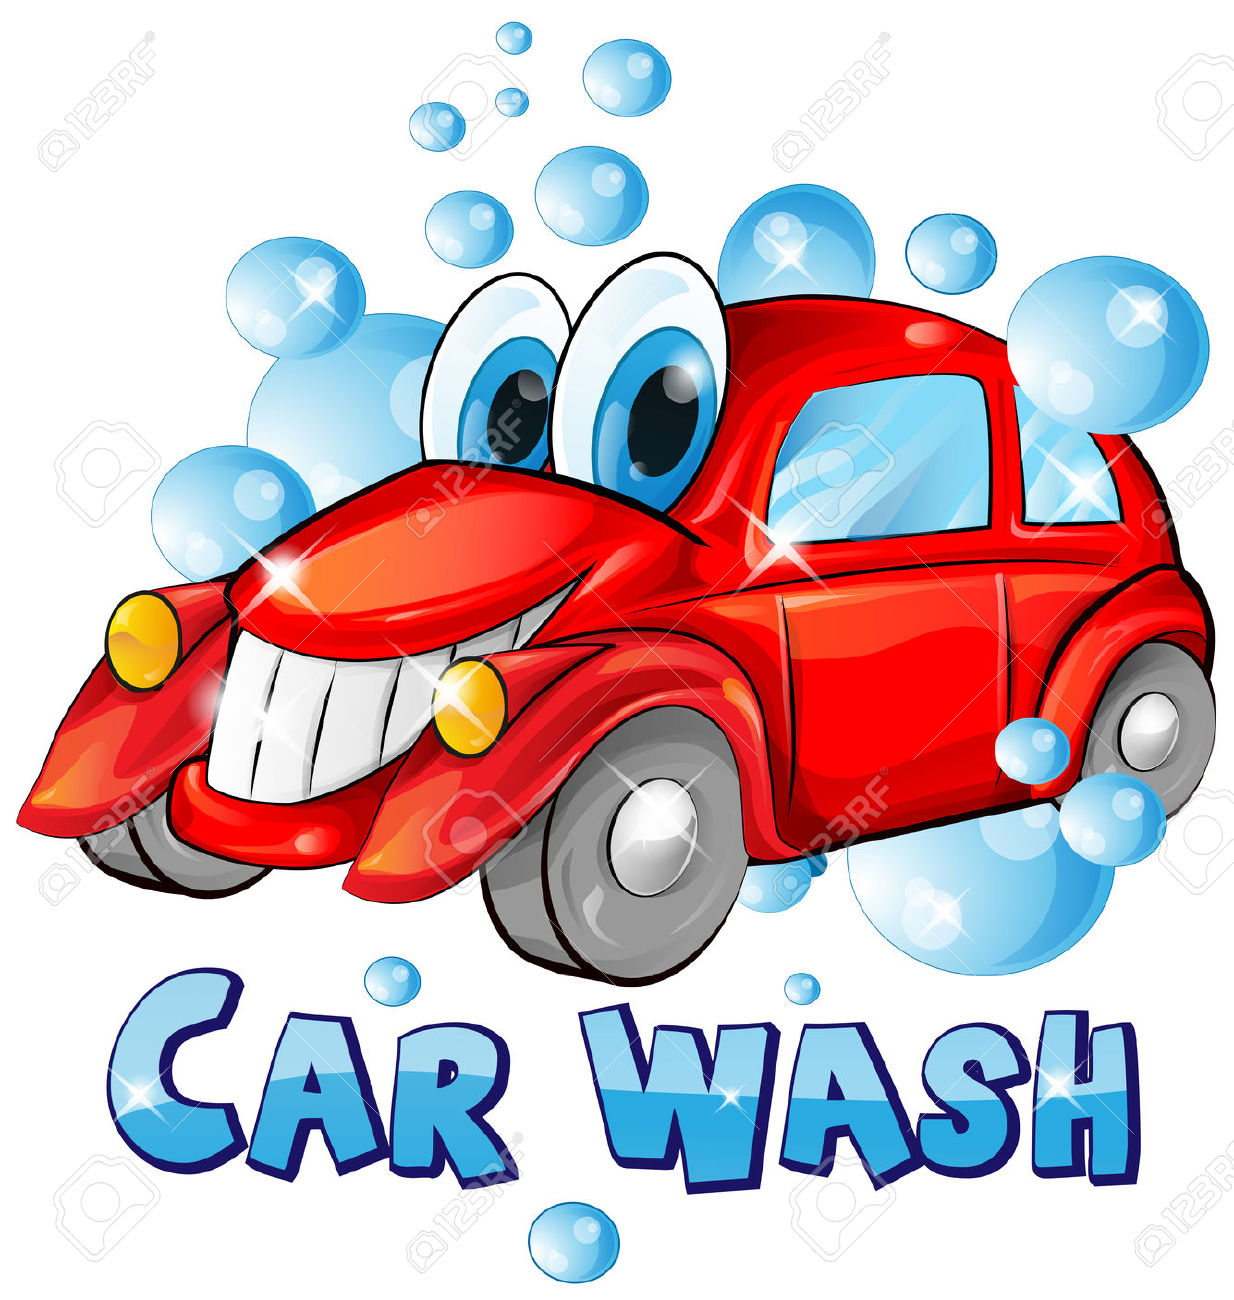 car wash: car wash cartoon isolated on white background